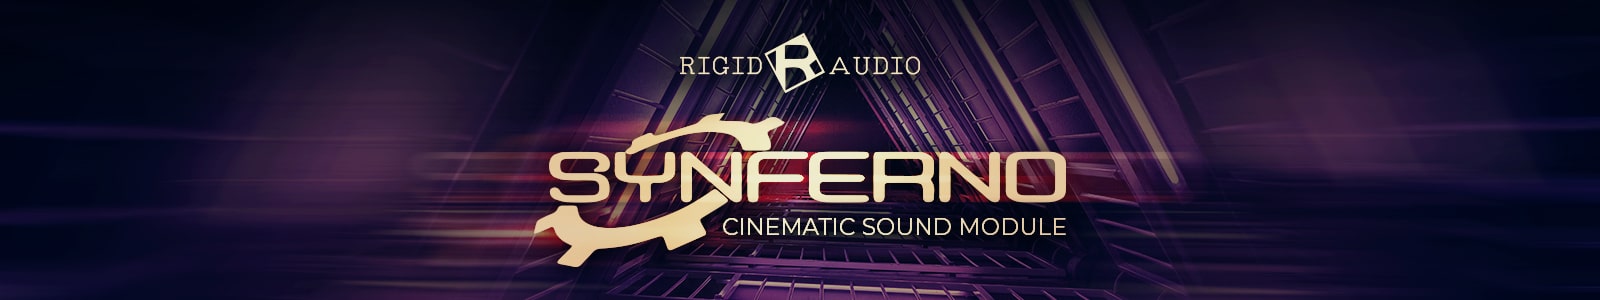 synferno by rigid audio